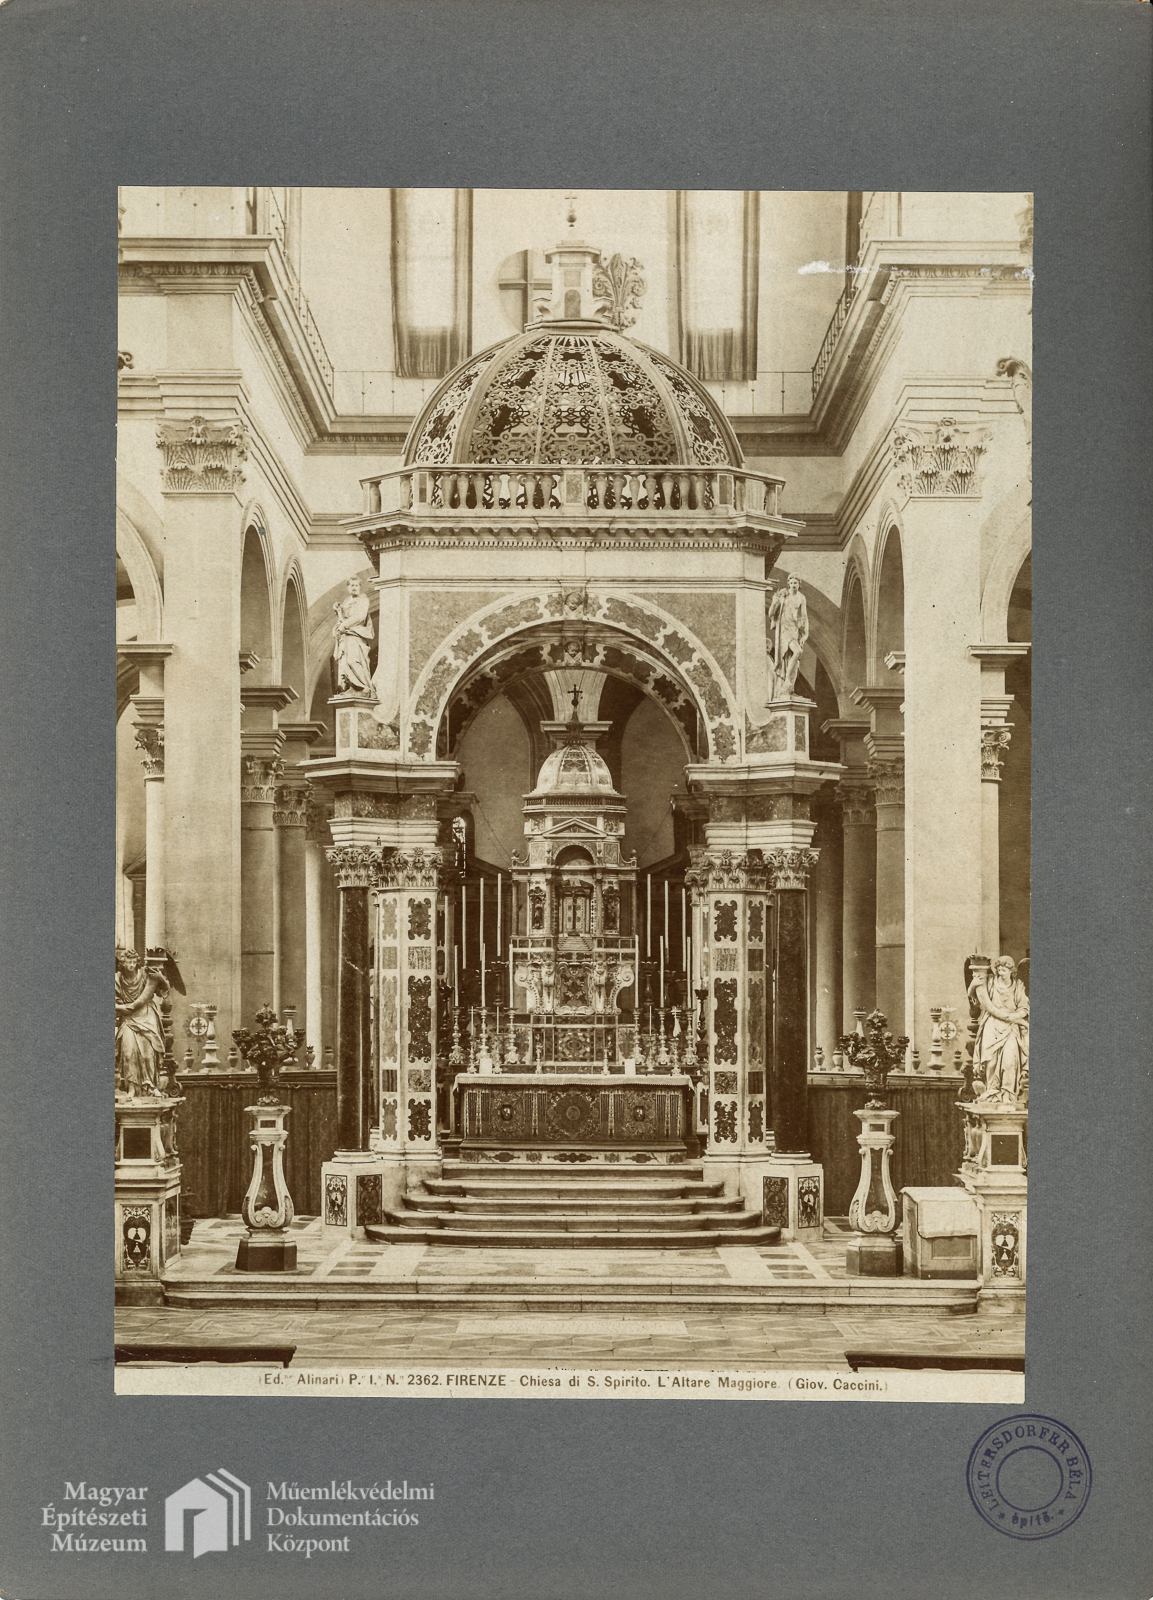 S. Spirito templom	Főoltár	Giovanni Caccini